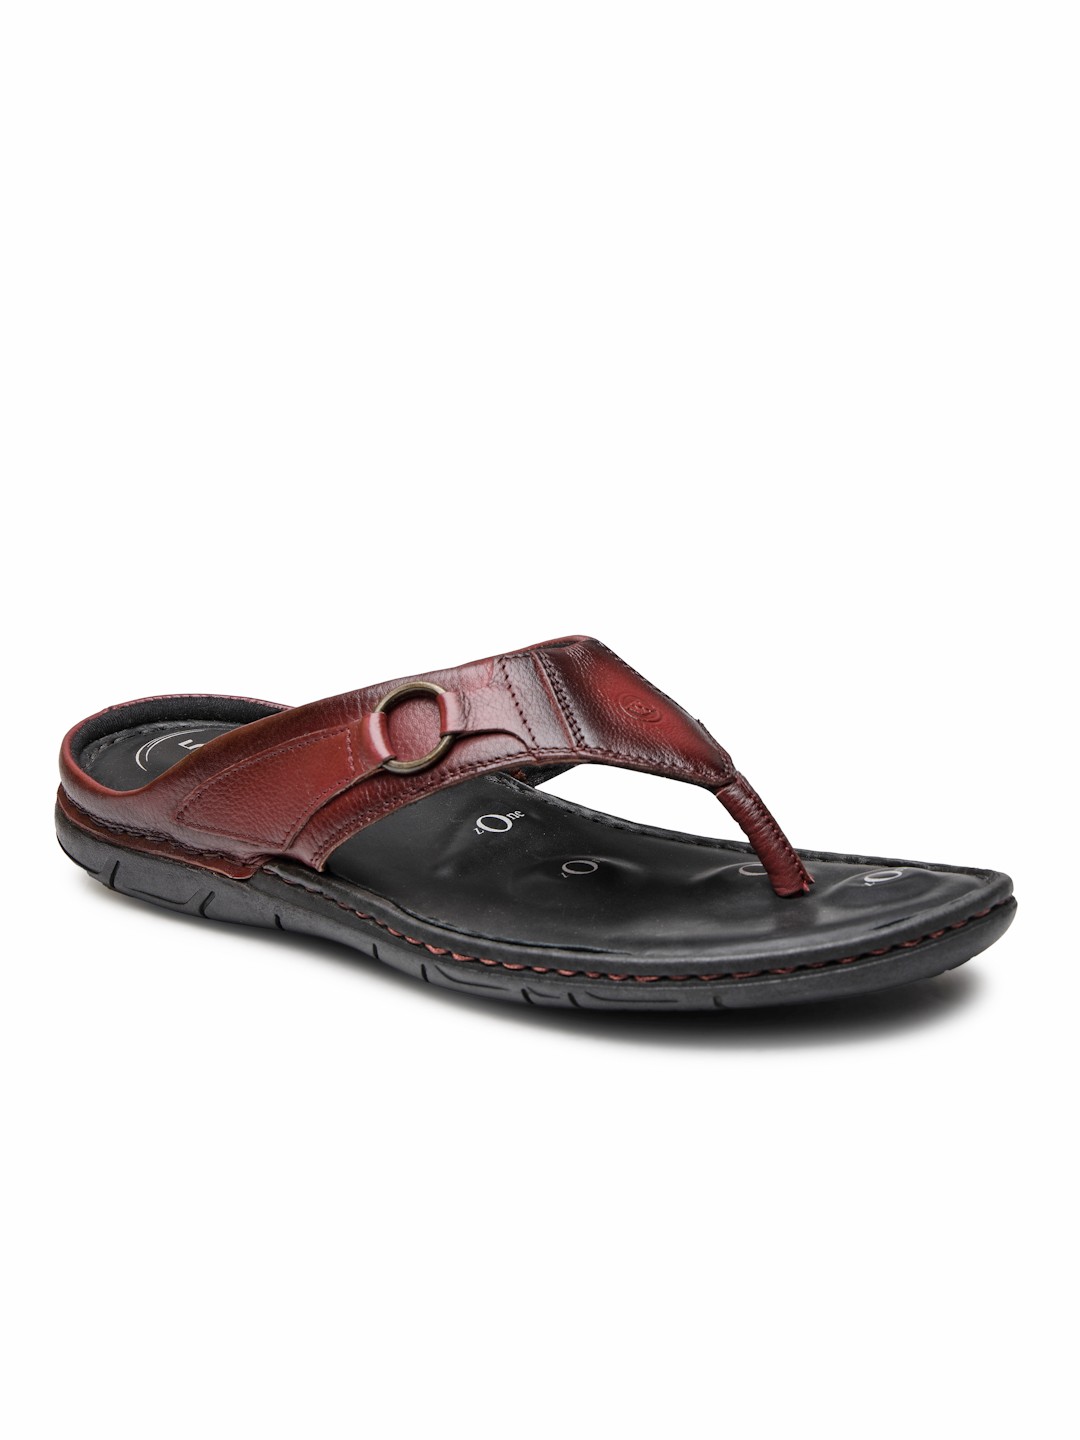 Buy Von Wellx Germany Comfort Men's Brown Slippers Riley Online in Tiruchirappalli